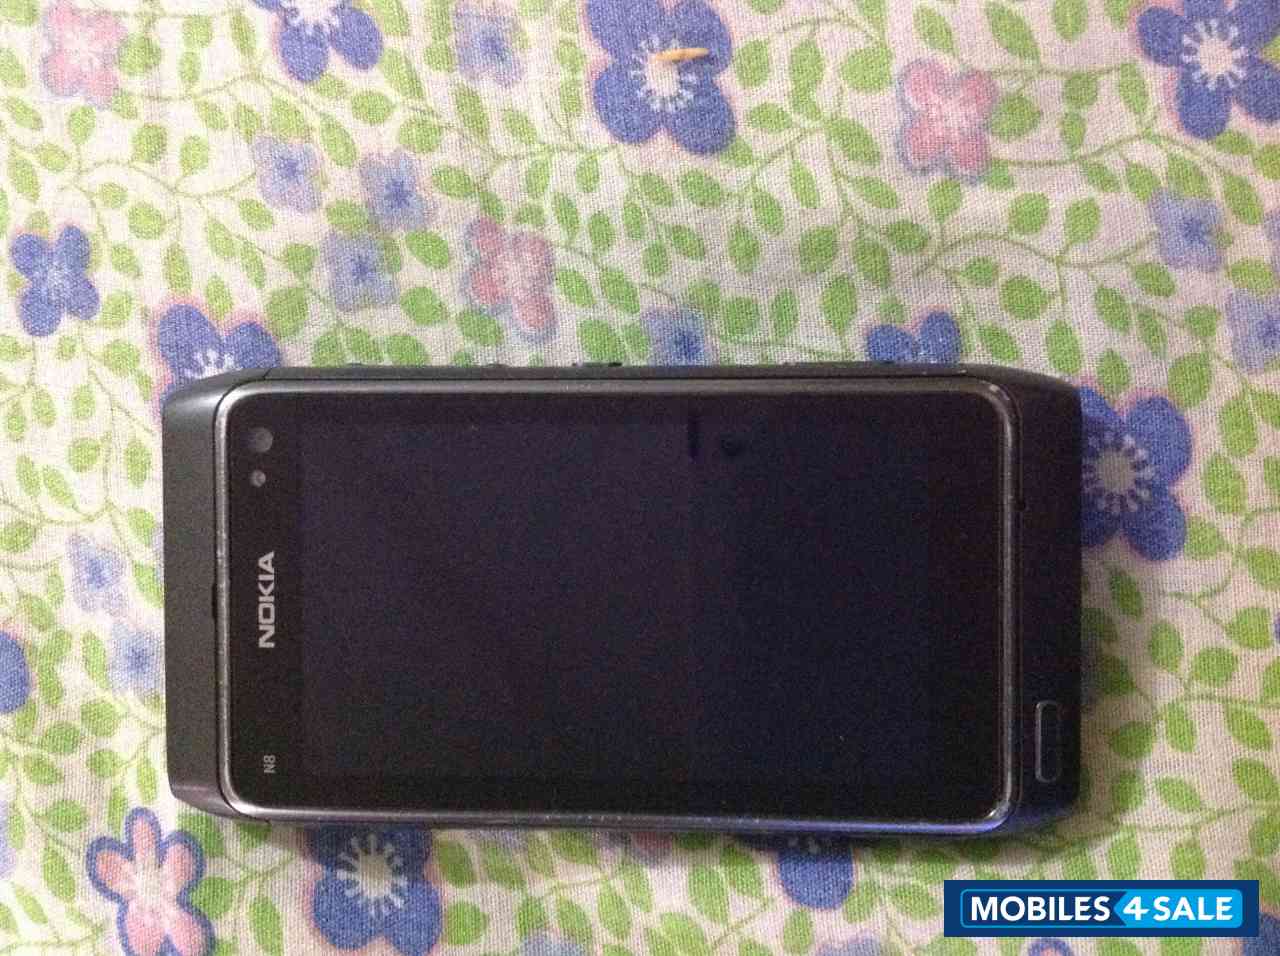 Grey Nokia N8